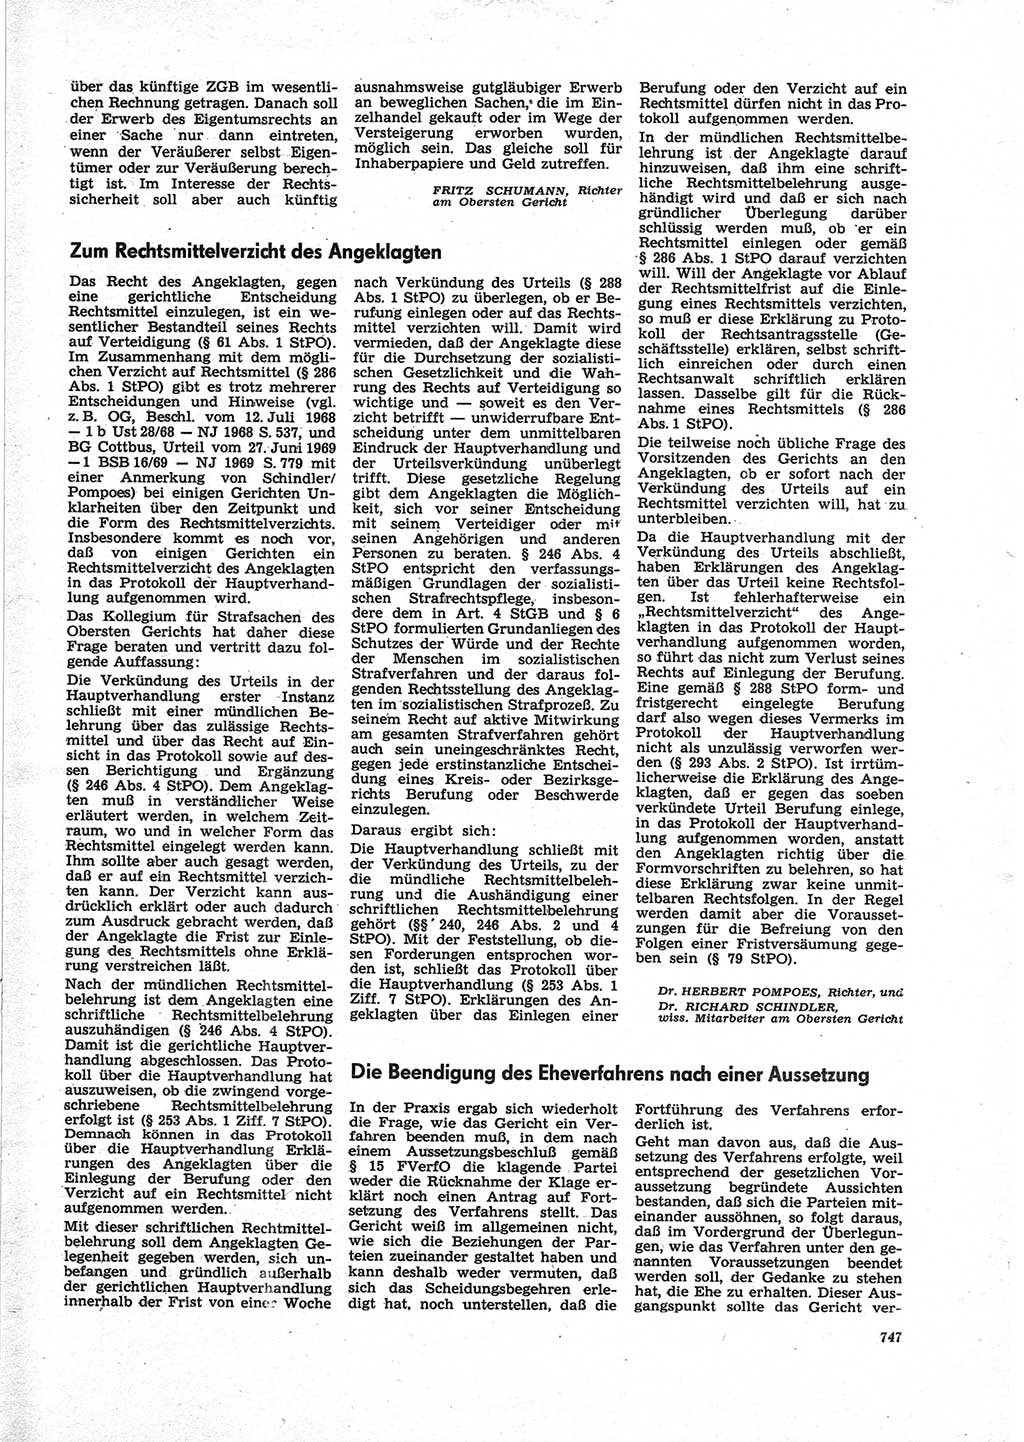 Neue Justiz (NJ), Zeitschrift für Recht und Rechtswissenschaft [Deutsche Demokratische Republik (DDR)], 25. Jahrgang 1971, Seite 747 (NJ DDR 1971, S. 747)